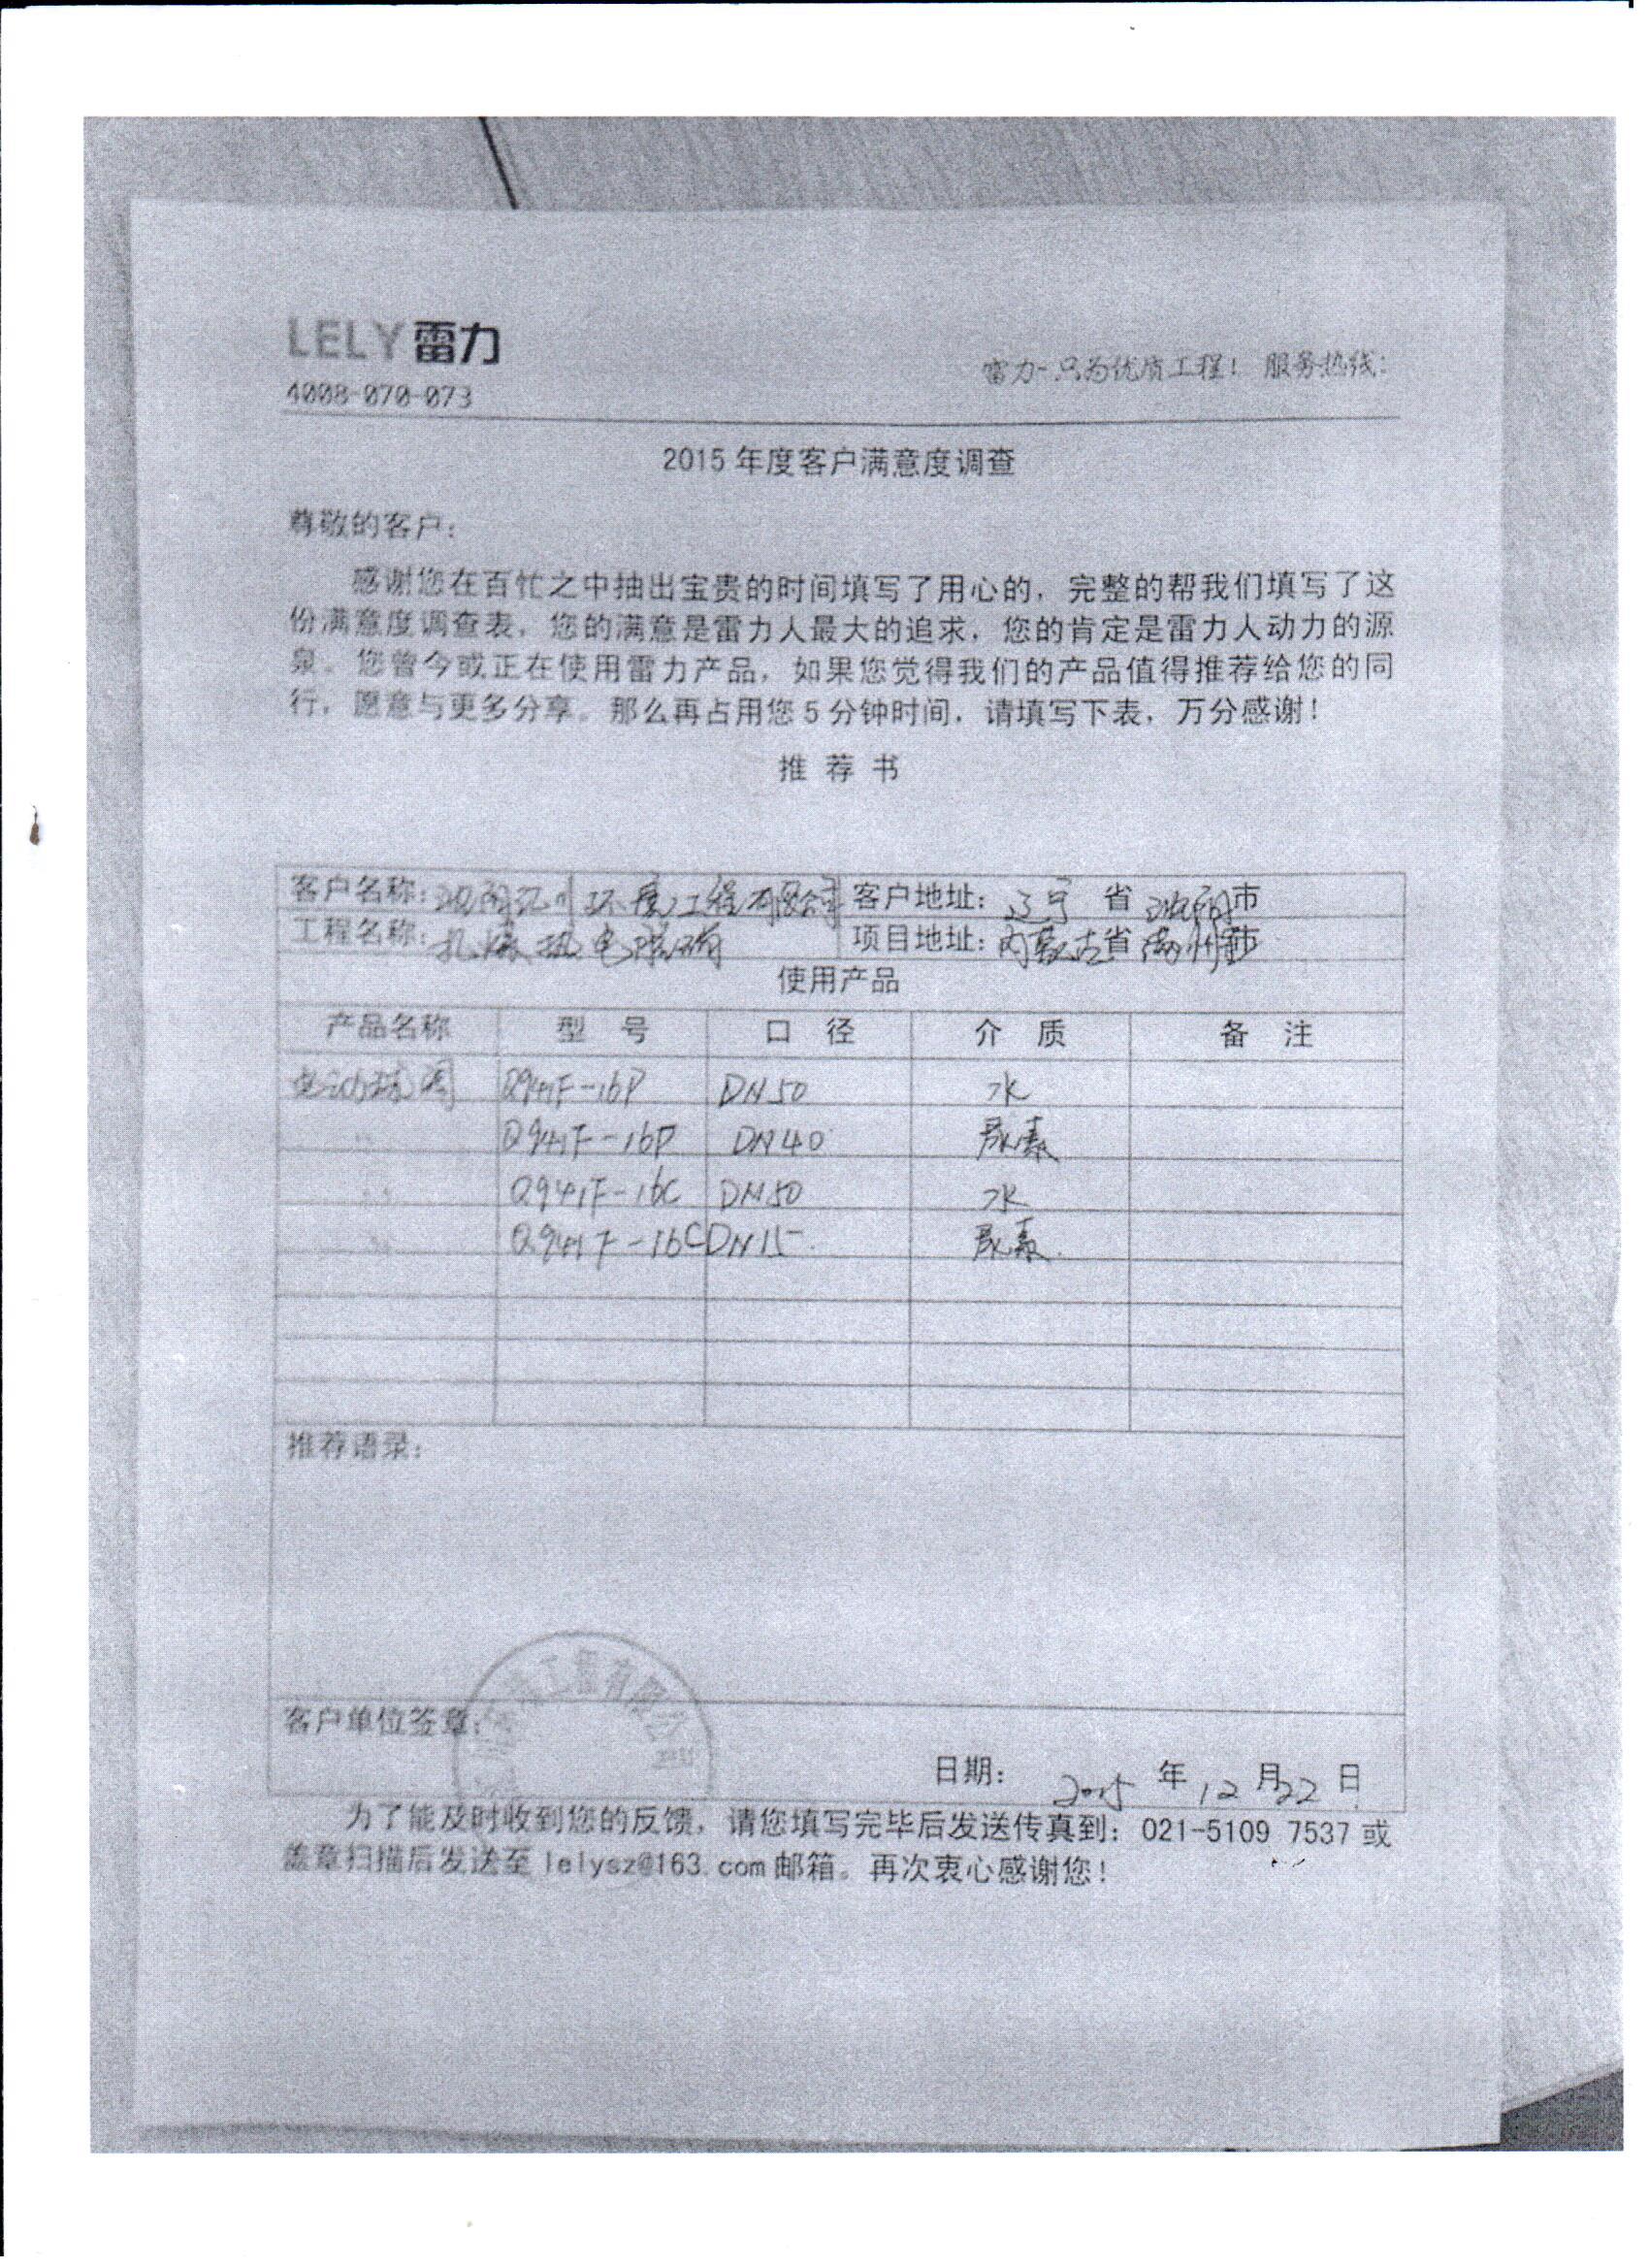 沈阳汇川环境工程有限公司对雷力阀门产品的推荐书